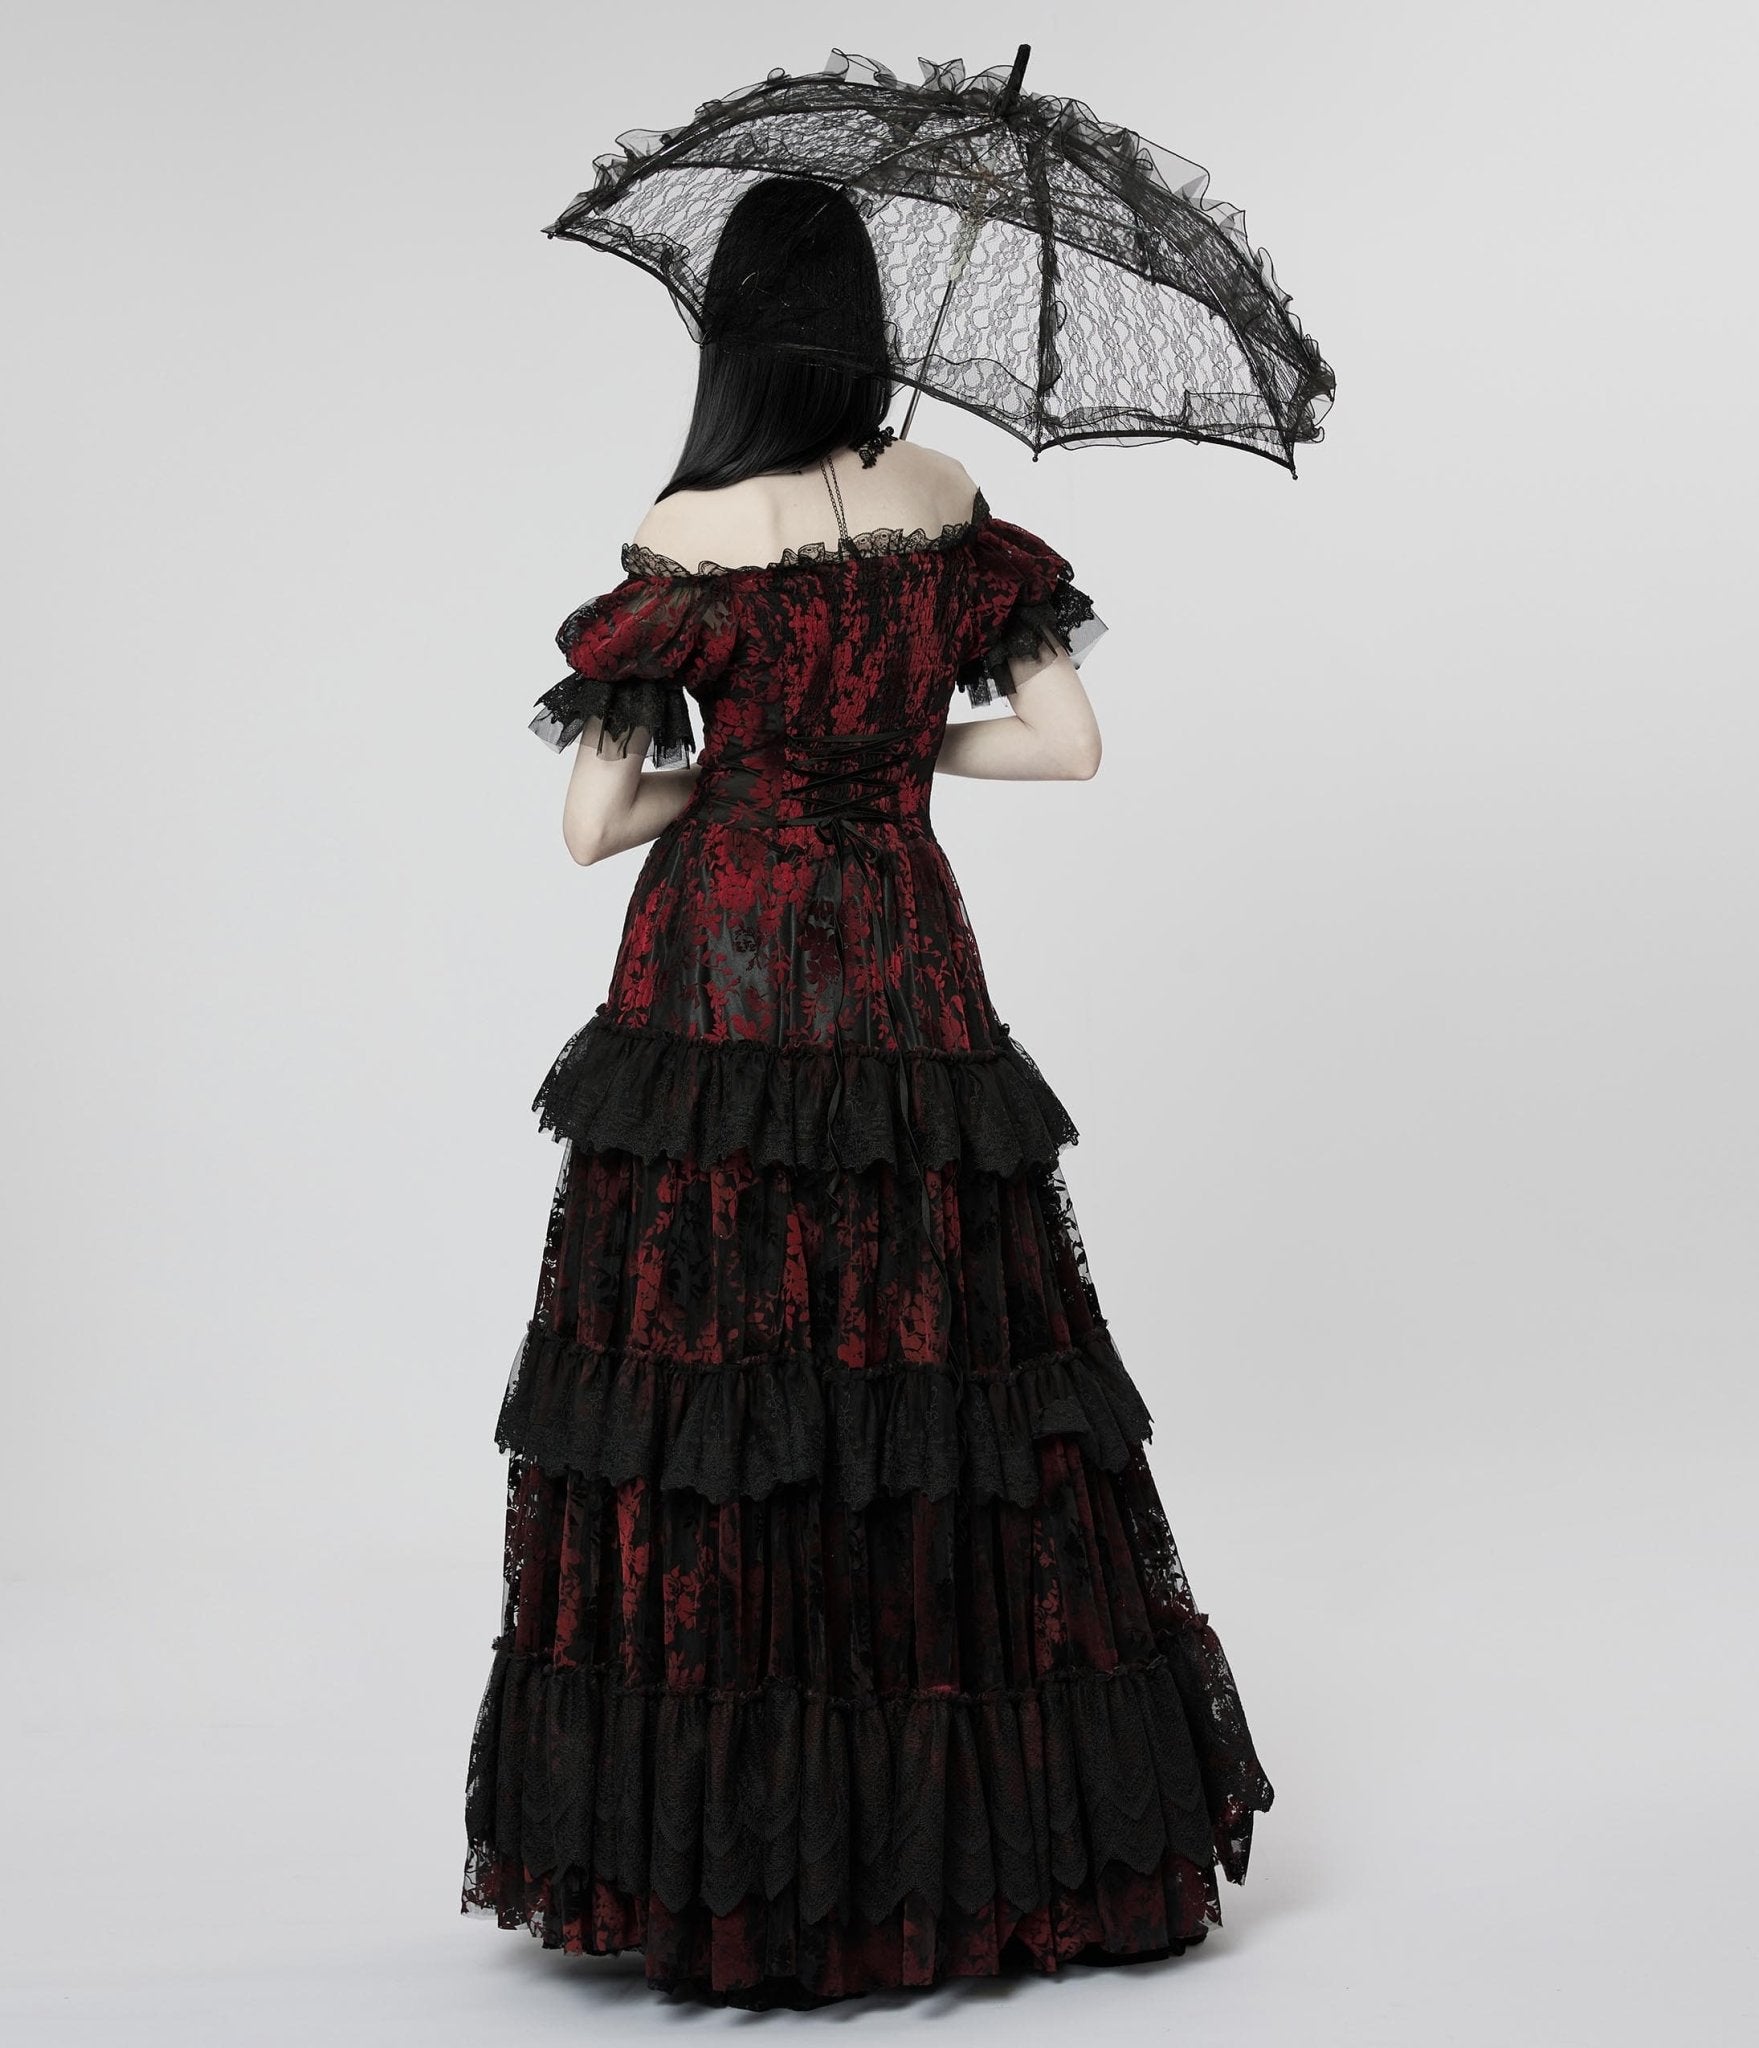 Gothic lace parasol.